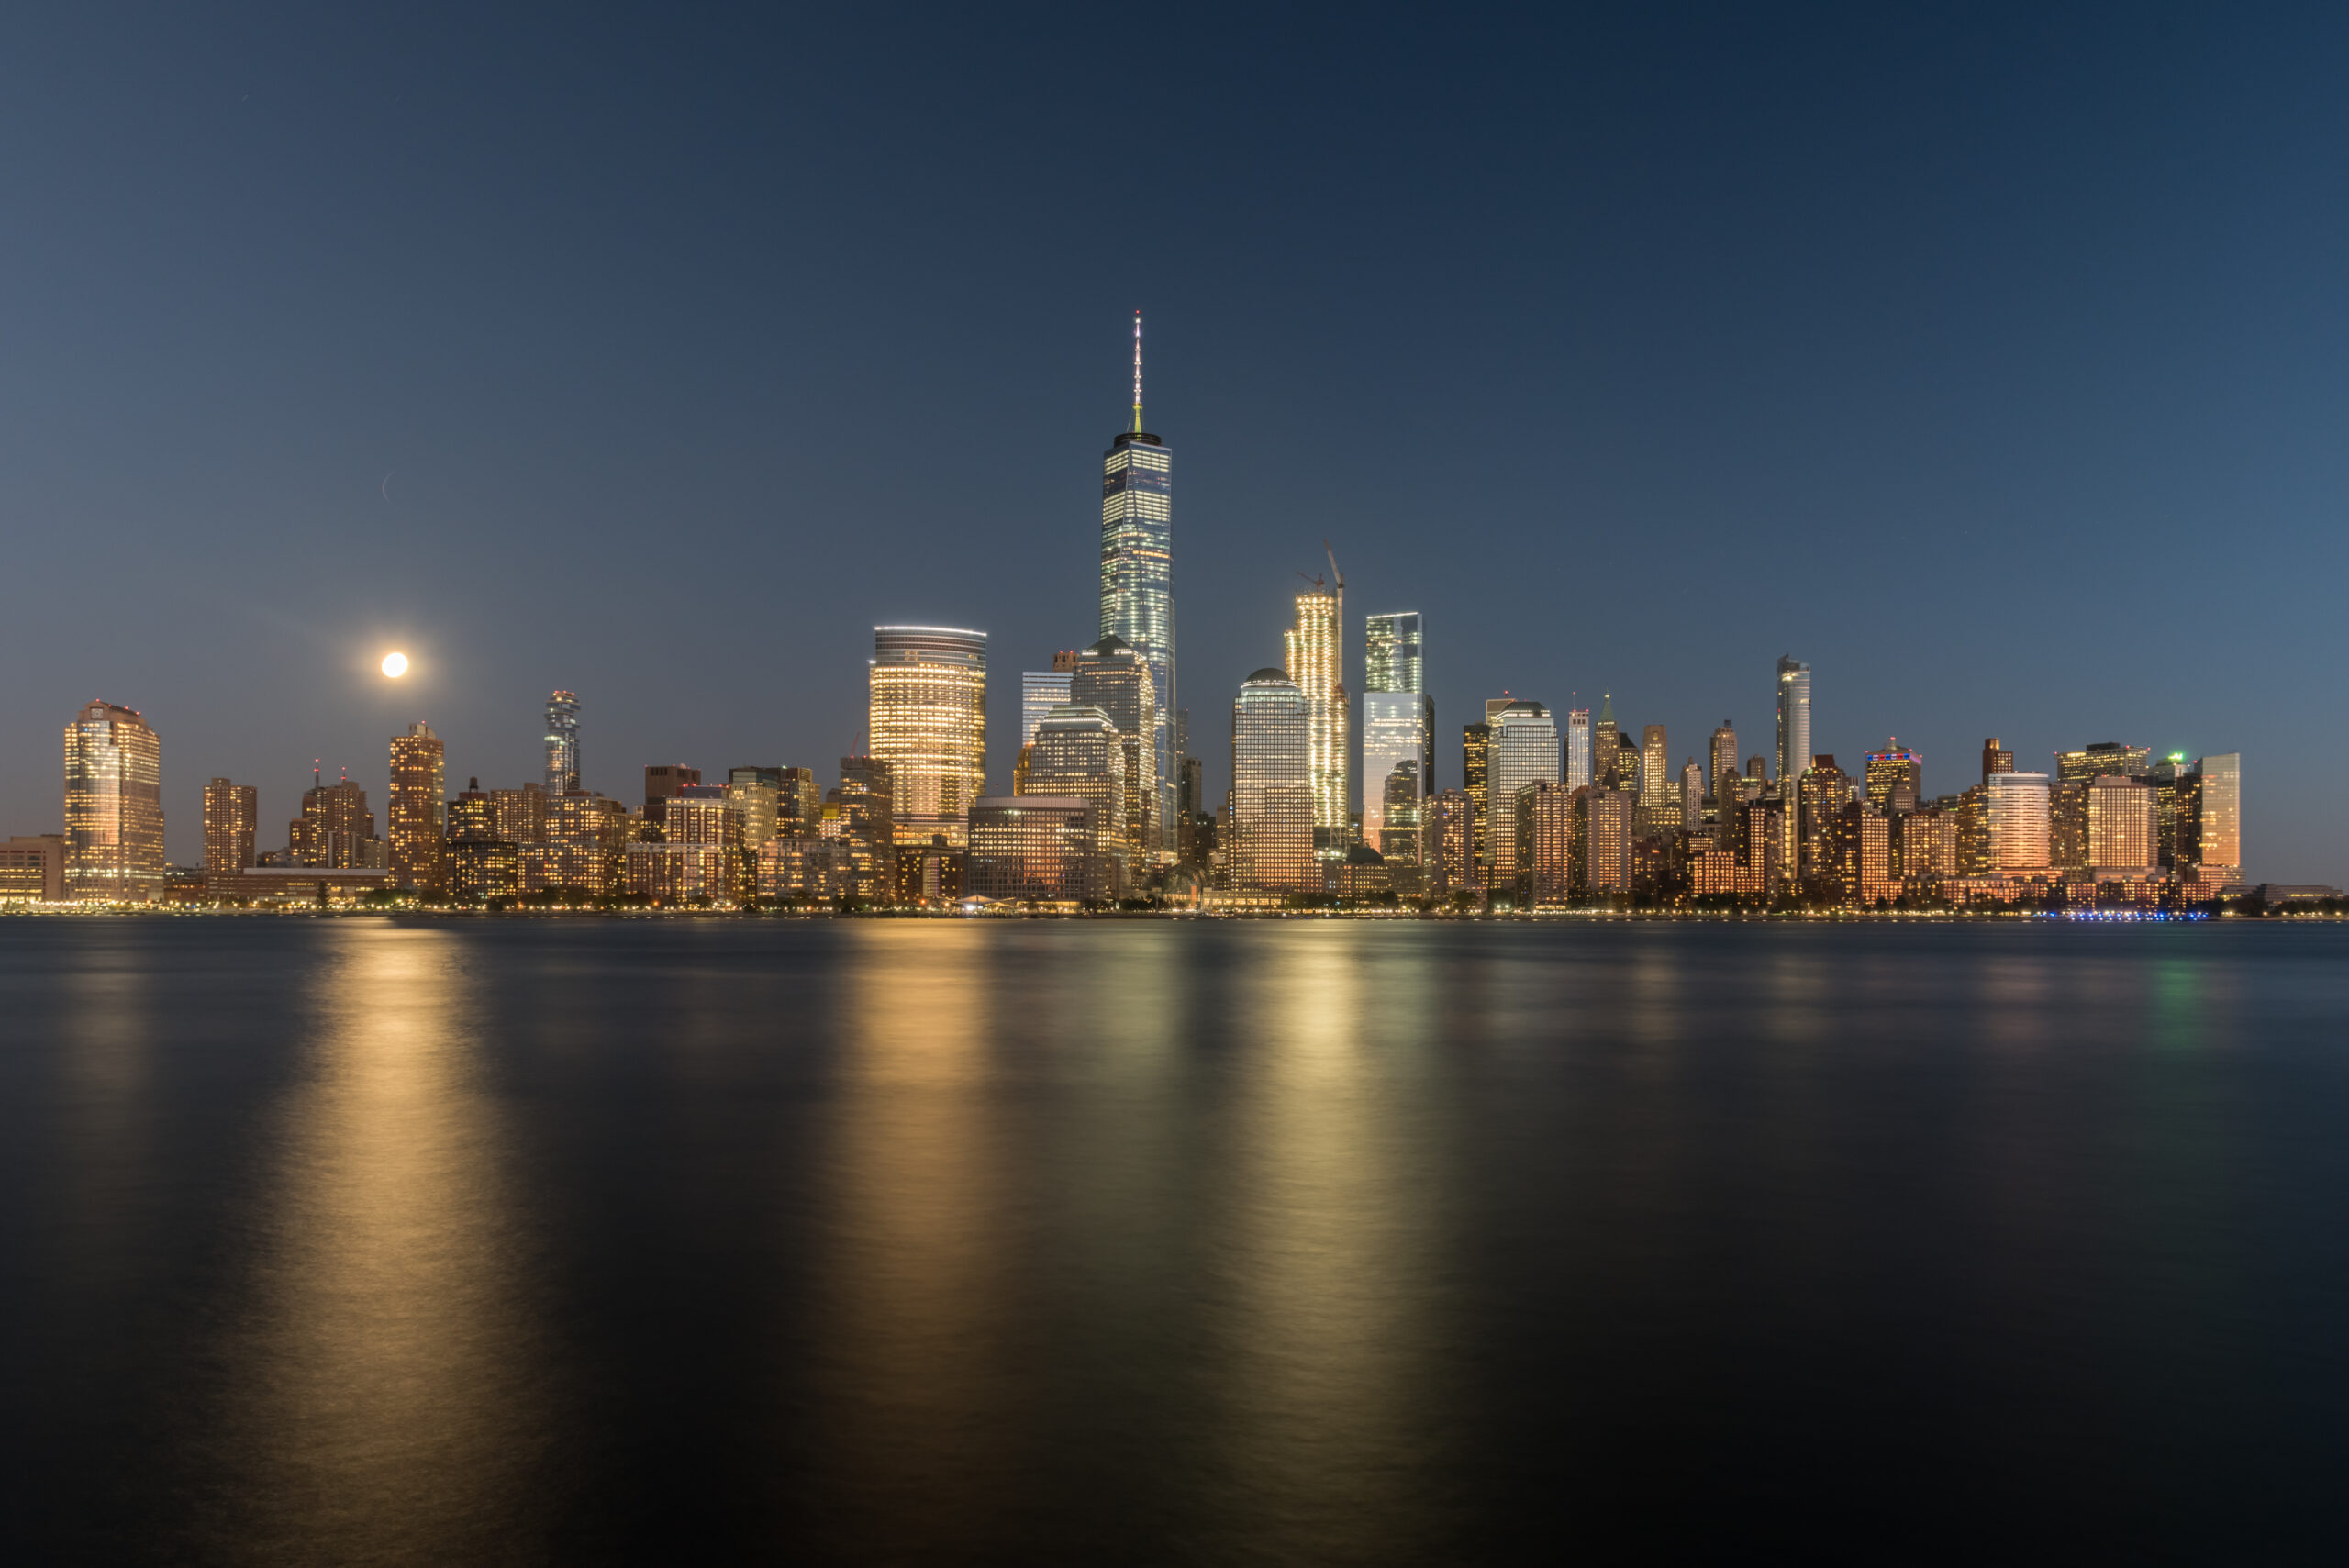 Nocna panorama Nowego Jorku oczarowuje widzem swoim magicznym blaskiem, gdy wysokie wieżowce oświetlone tysiącami światełek wznoszą się ku niebu. Ta urzekająca sceneria przedstawia tętniące życiem miasto, gdzie neonowe reklamy i migotające okna tworzą niepowtarzalną atmosferę energii i niekończących się możliwości.